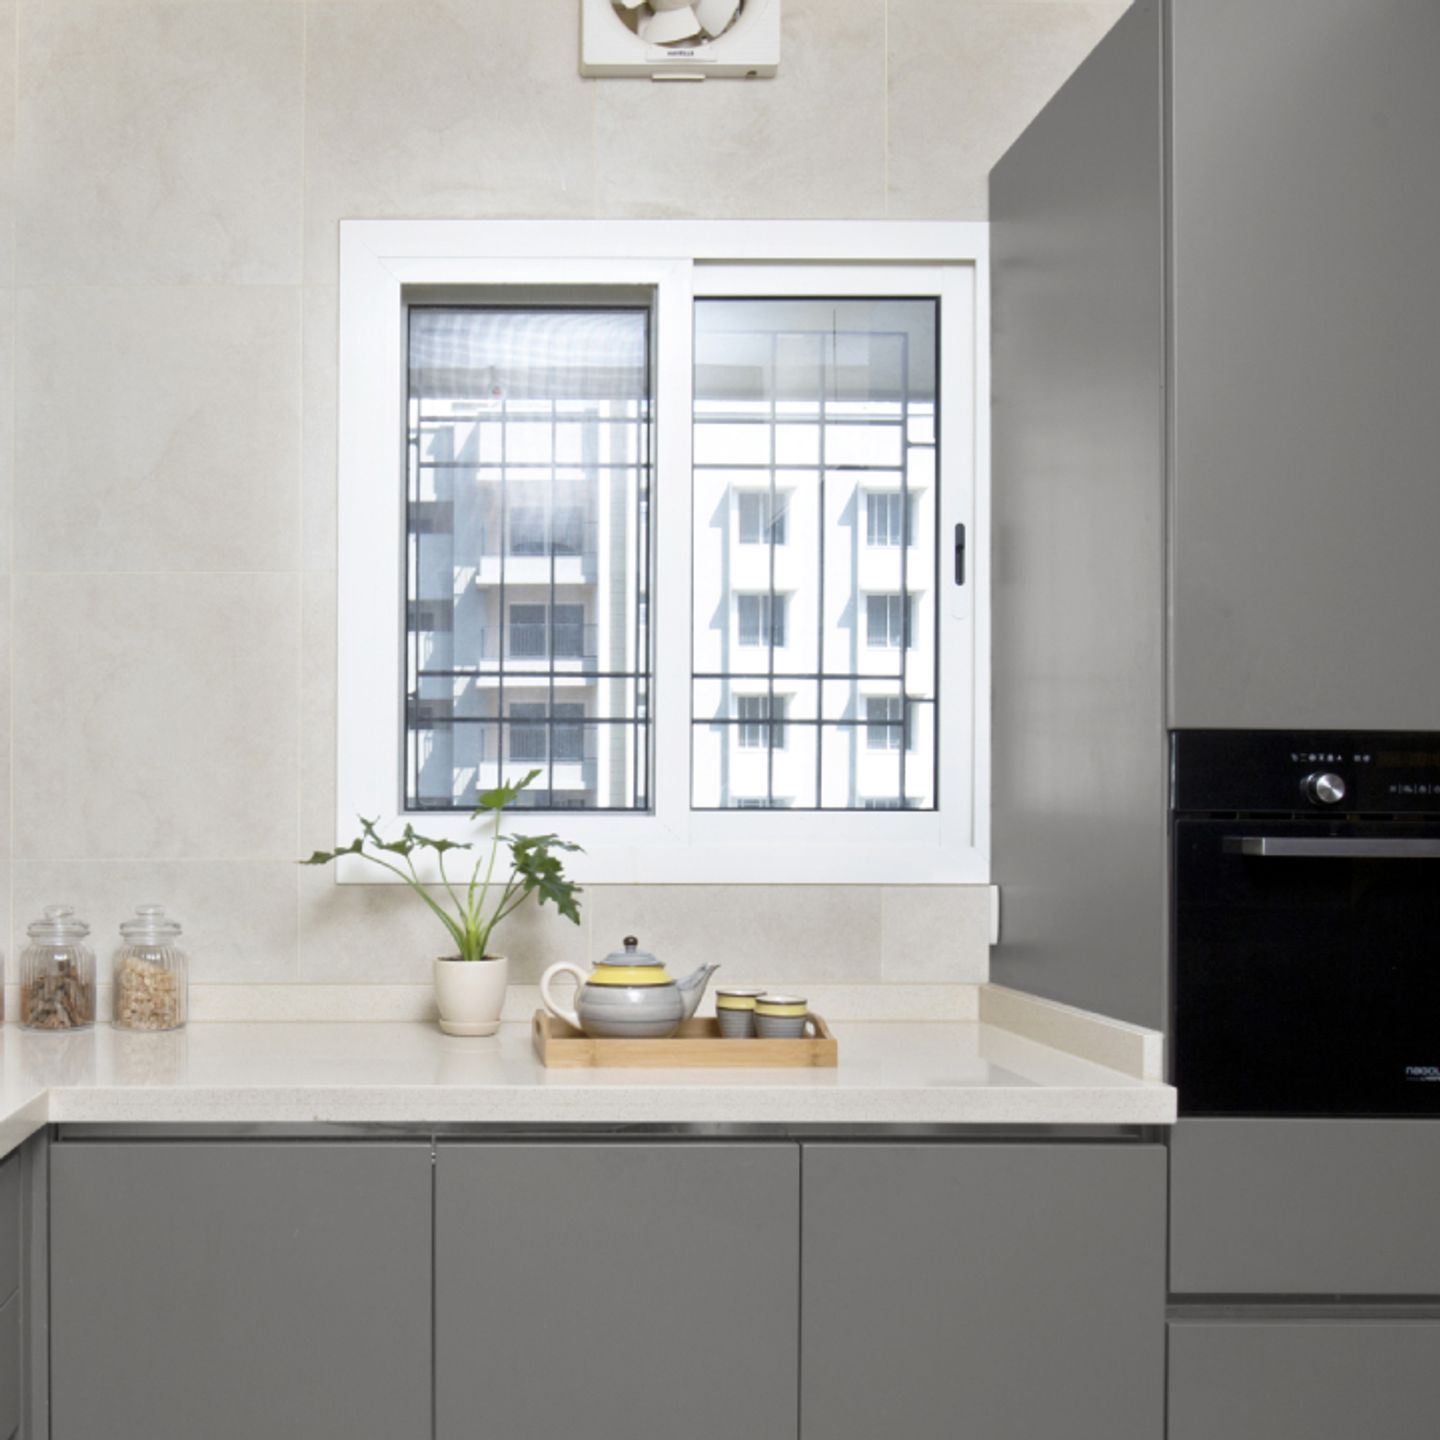 UPVC Sliding Window Design For Kitchens - Livspace